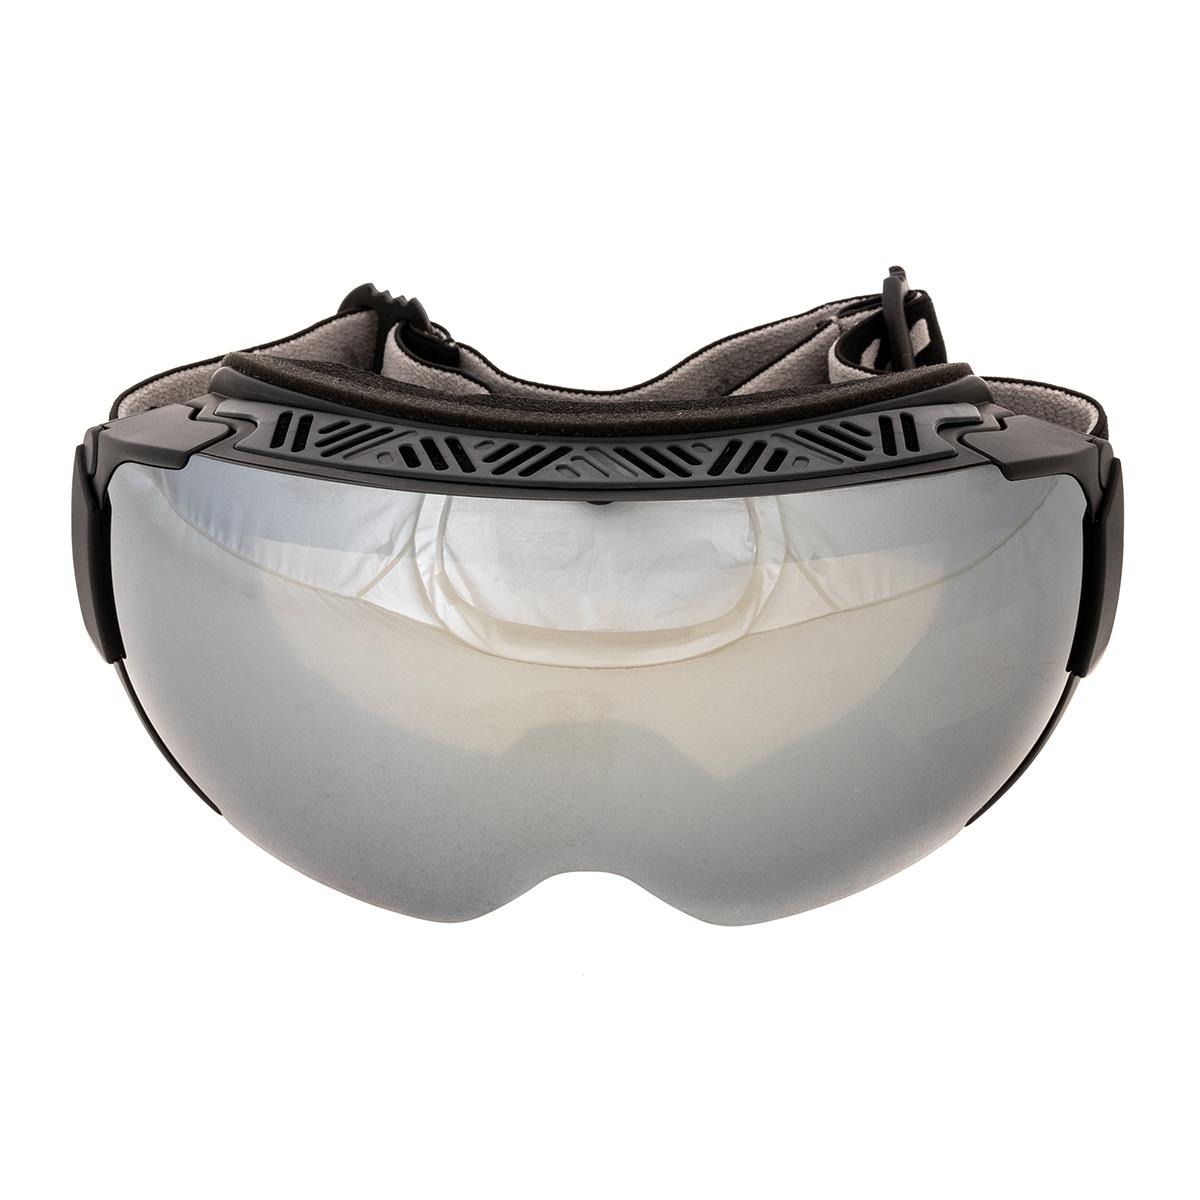 Очки горнолыжные HS-HX-019-GY Helios очки полумаска для плавания с берушами детские uv защита